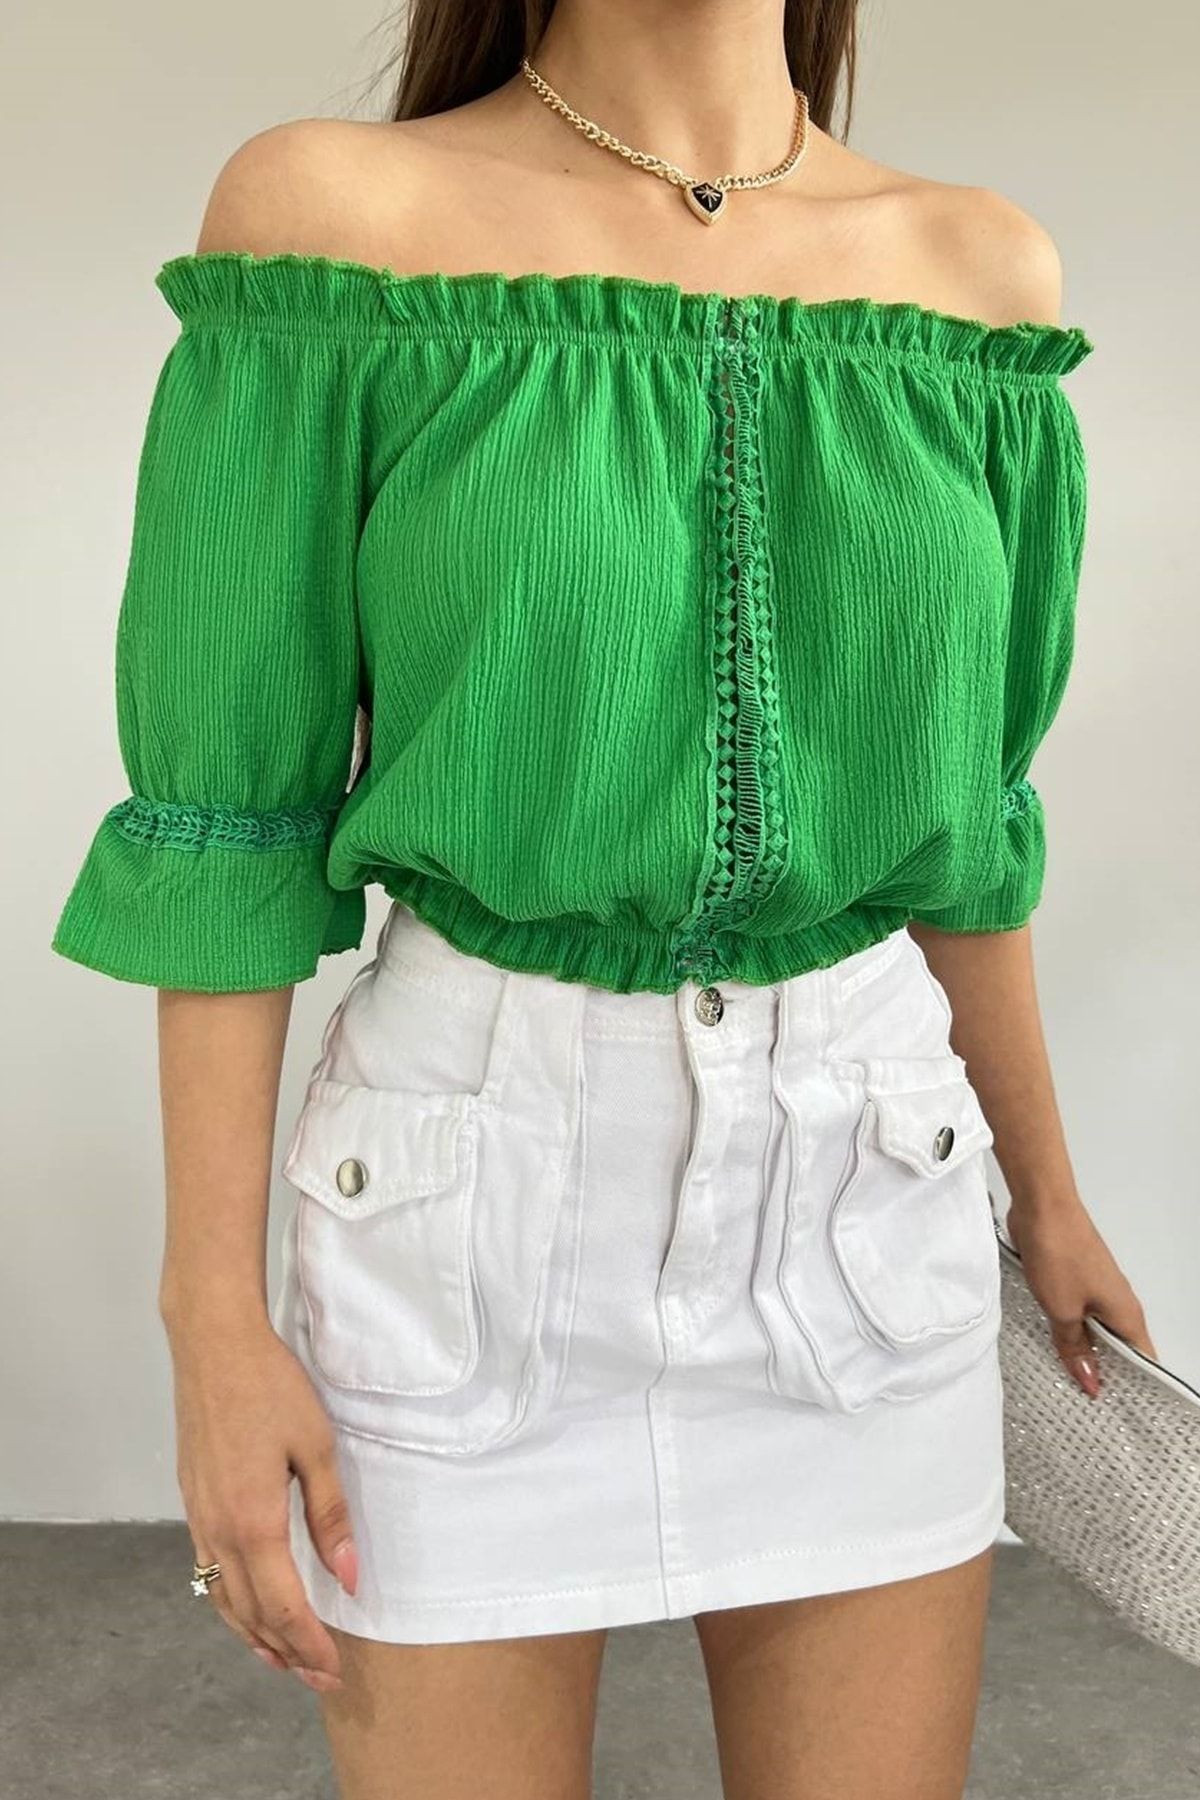 lovebox Kadın Pamuklu Kumaş Straplez Yaka Beli Lastik Detaylı Şık Tasarım Yeşil 40/42 Cm Bluz 10369